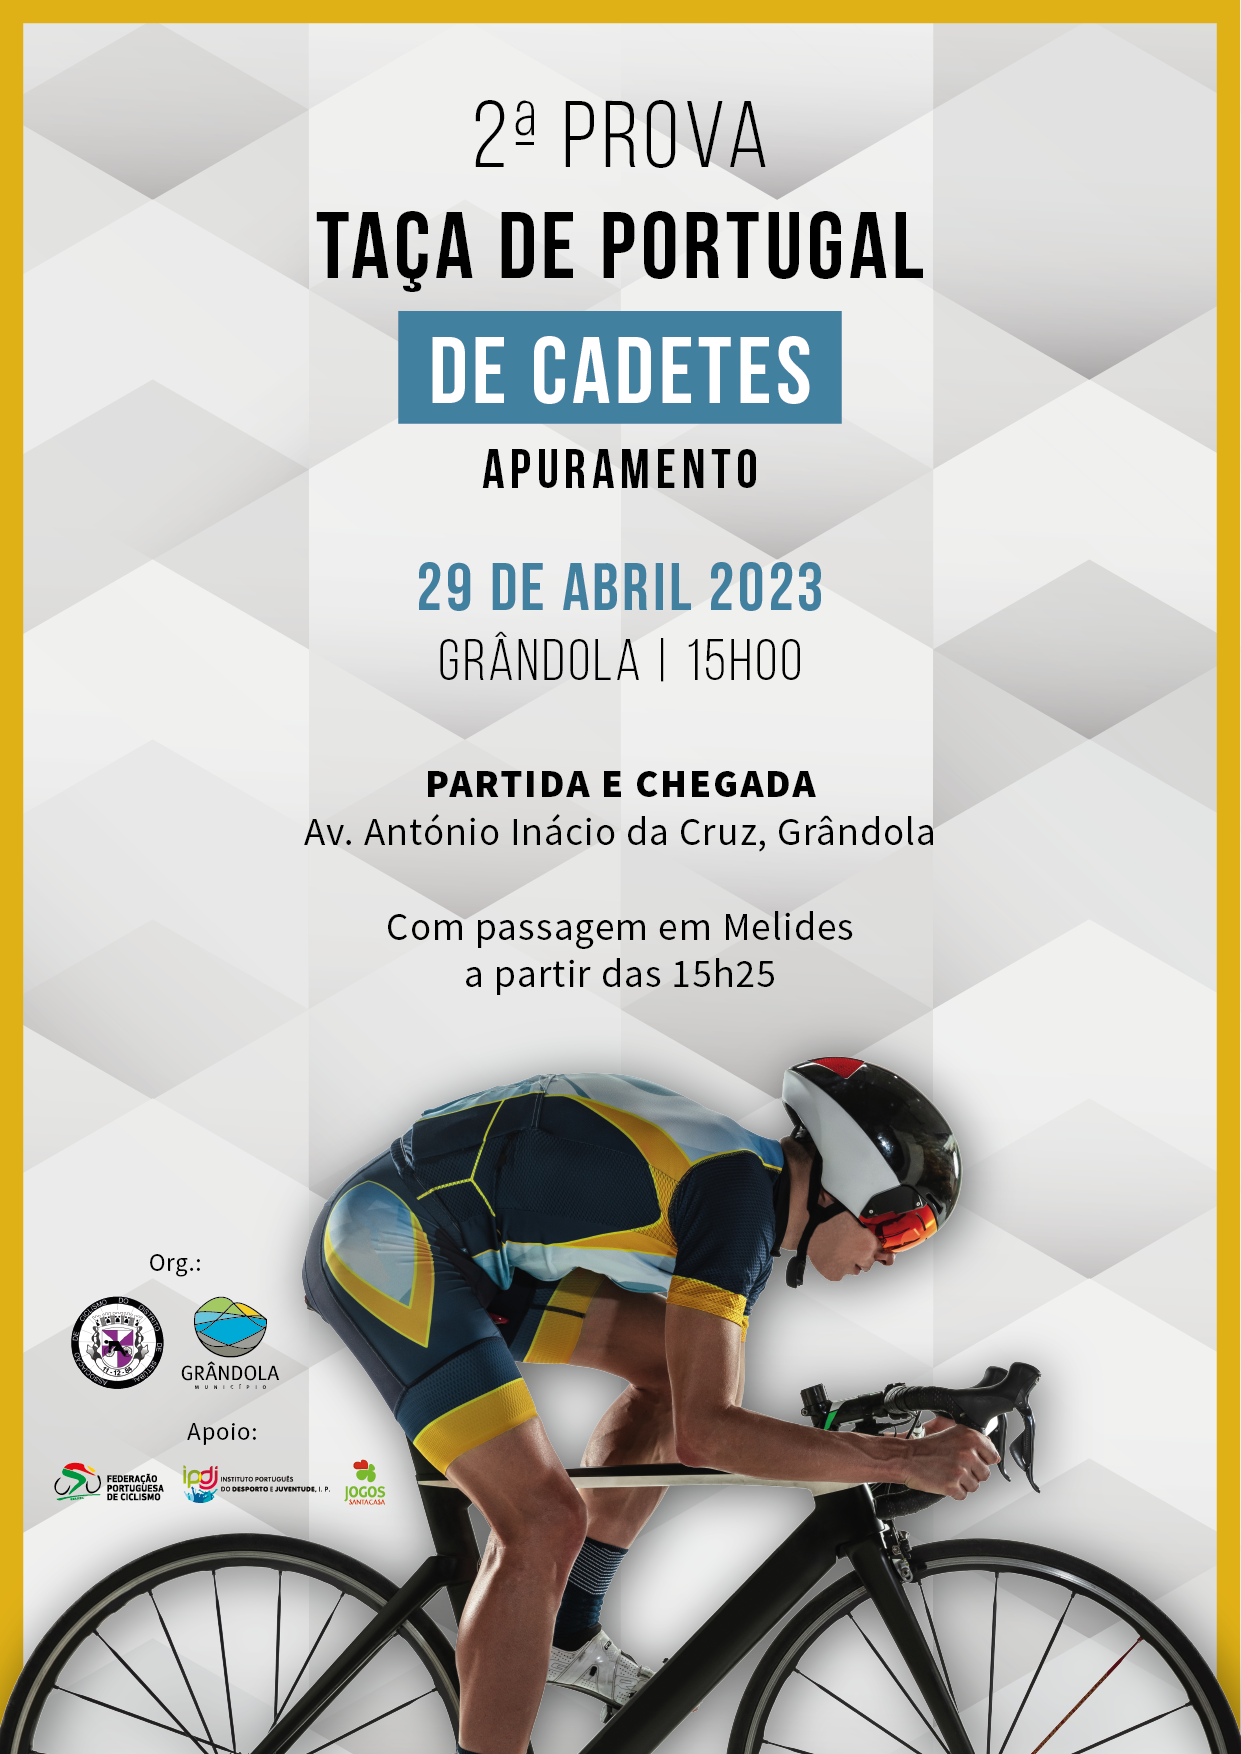 DESPORTO | 2.ª Prova de Apuramento para a Taça de Portugal de Cadetes em Ciclismo